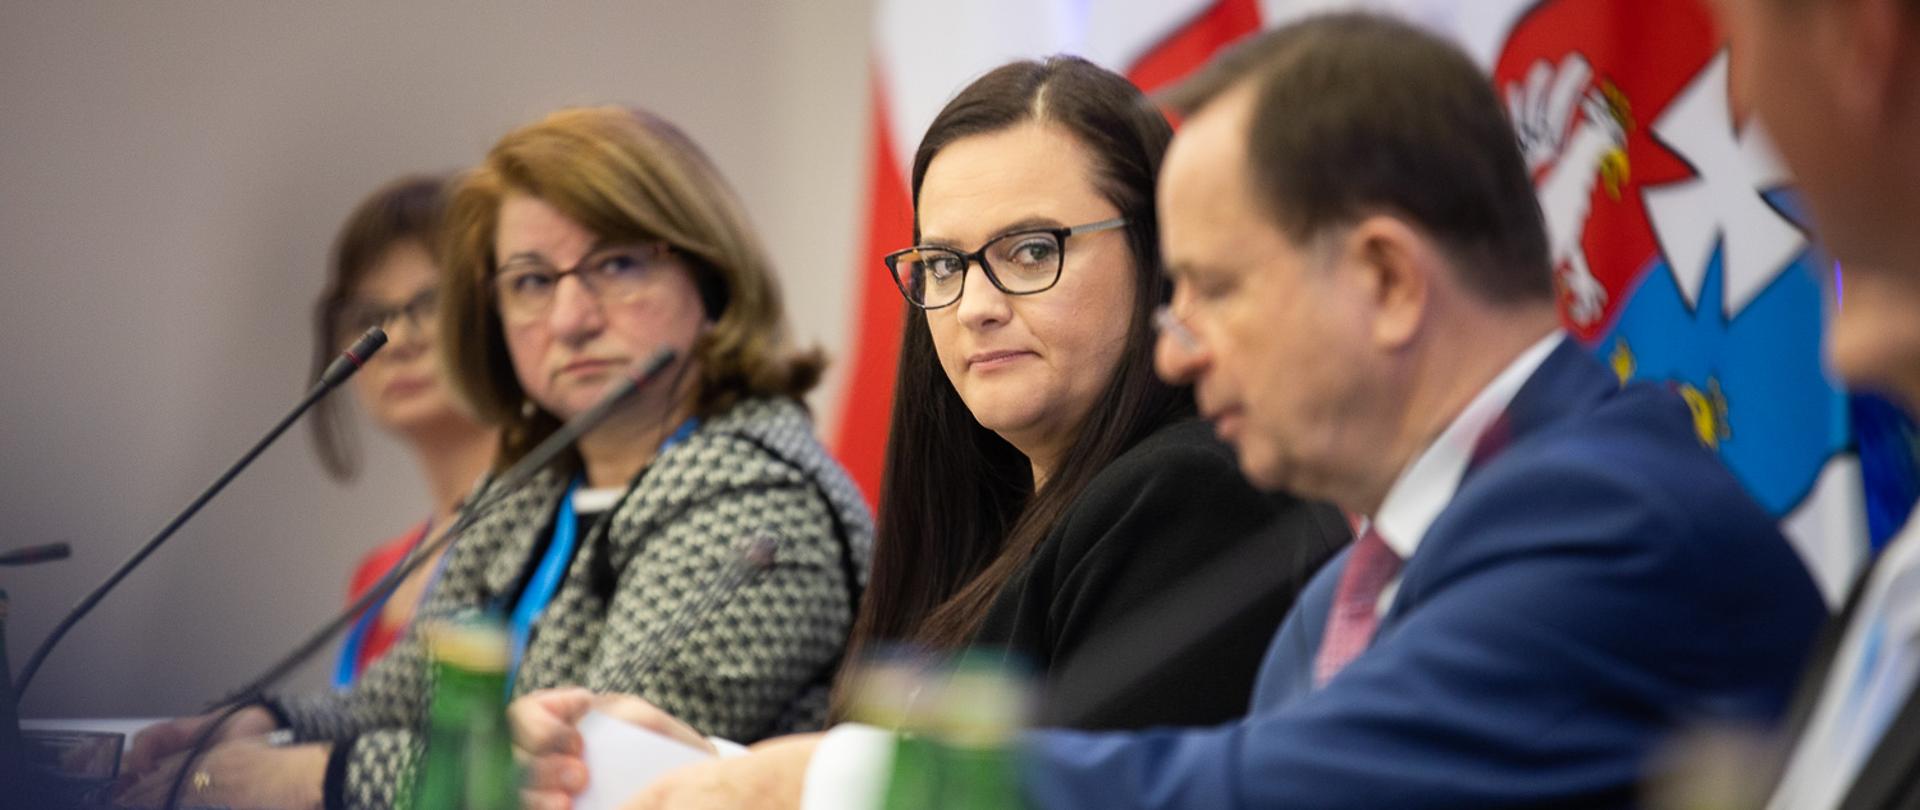 Na zdjęciu cztery osoby siedzące przy mikrofonach. Druga od prawej minister M. Jarosińska-Jedynak.